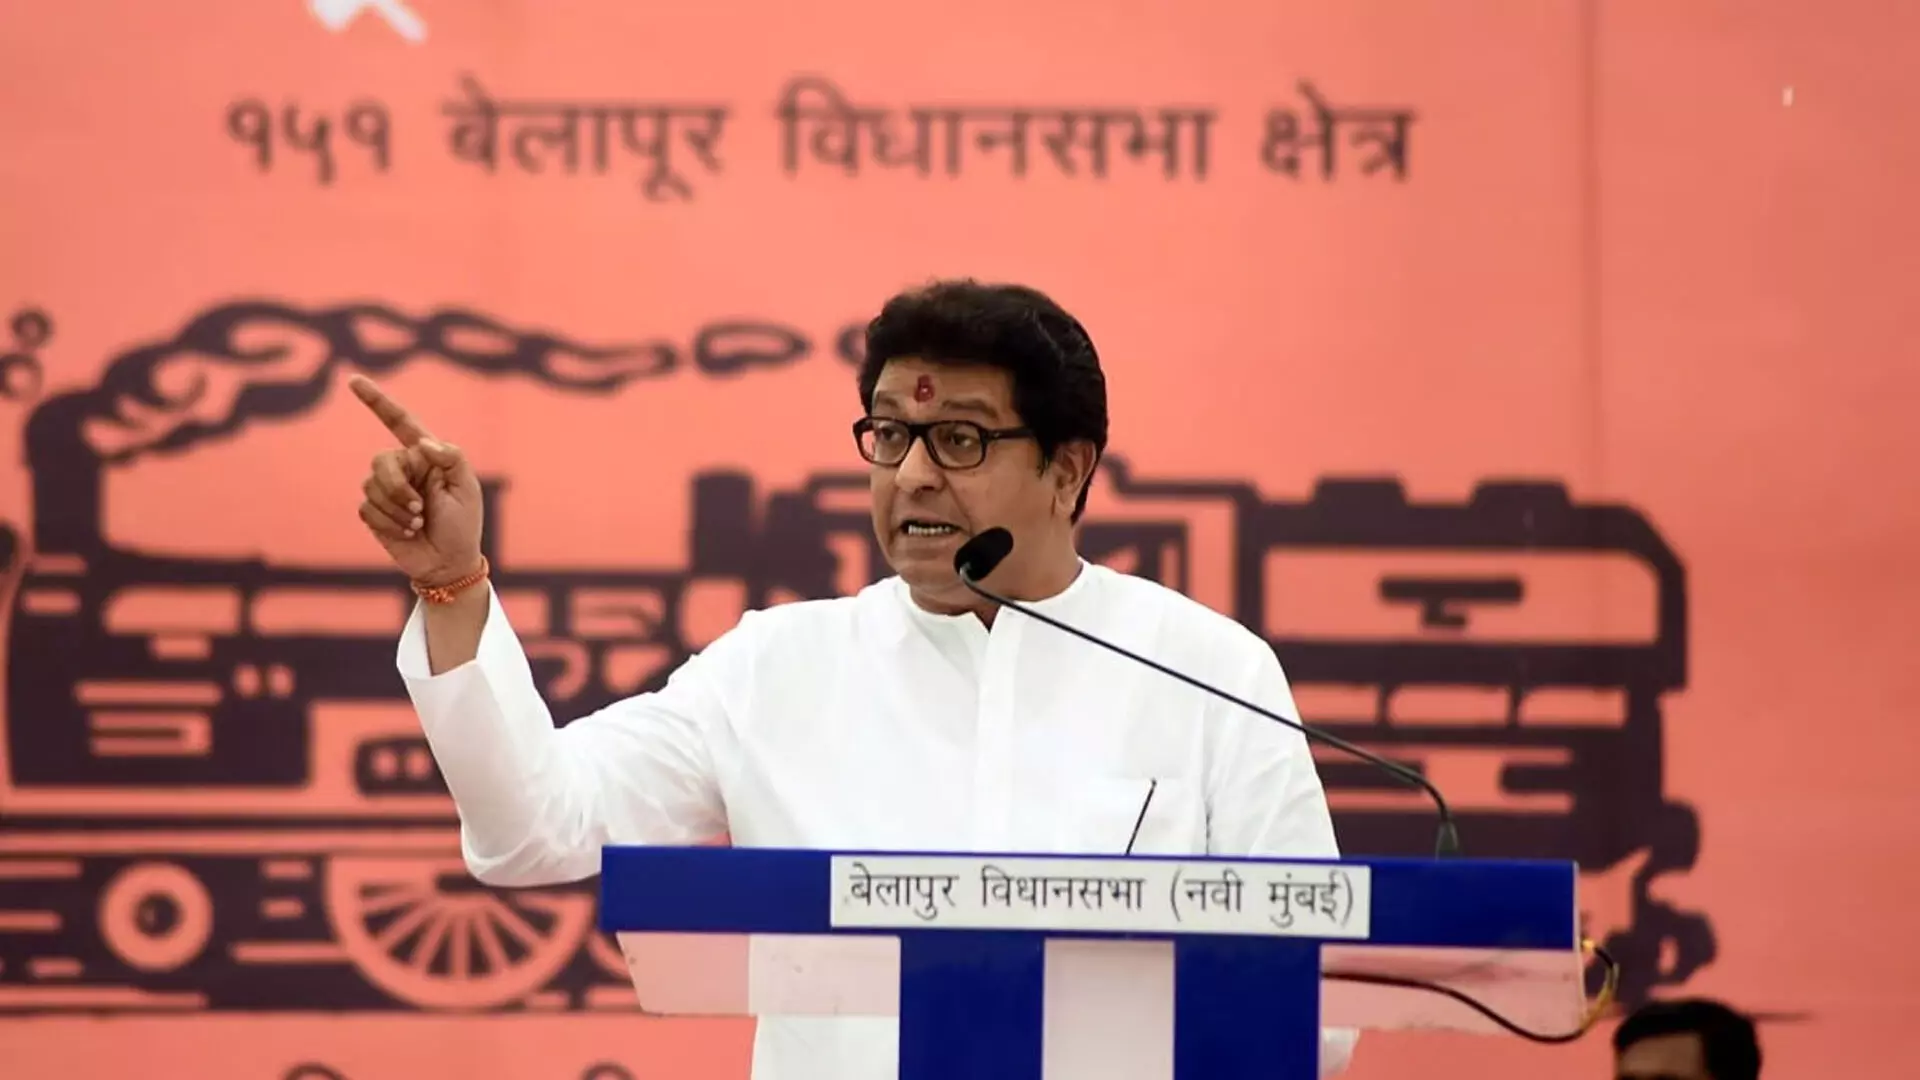 राज ठाकरे की MNS महाराष्ट्र चुनाव में अकेले उतरेगी- रिपोर्ट